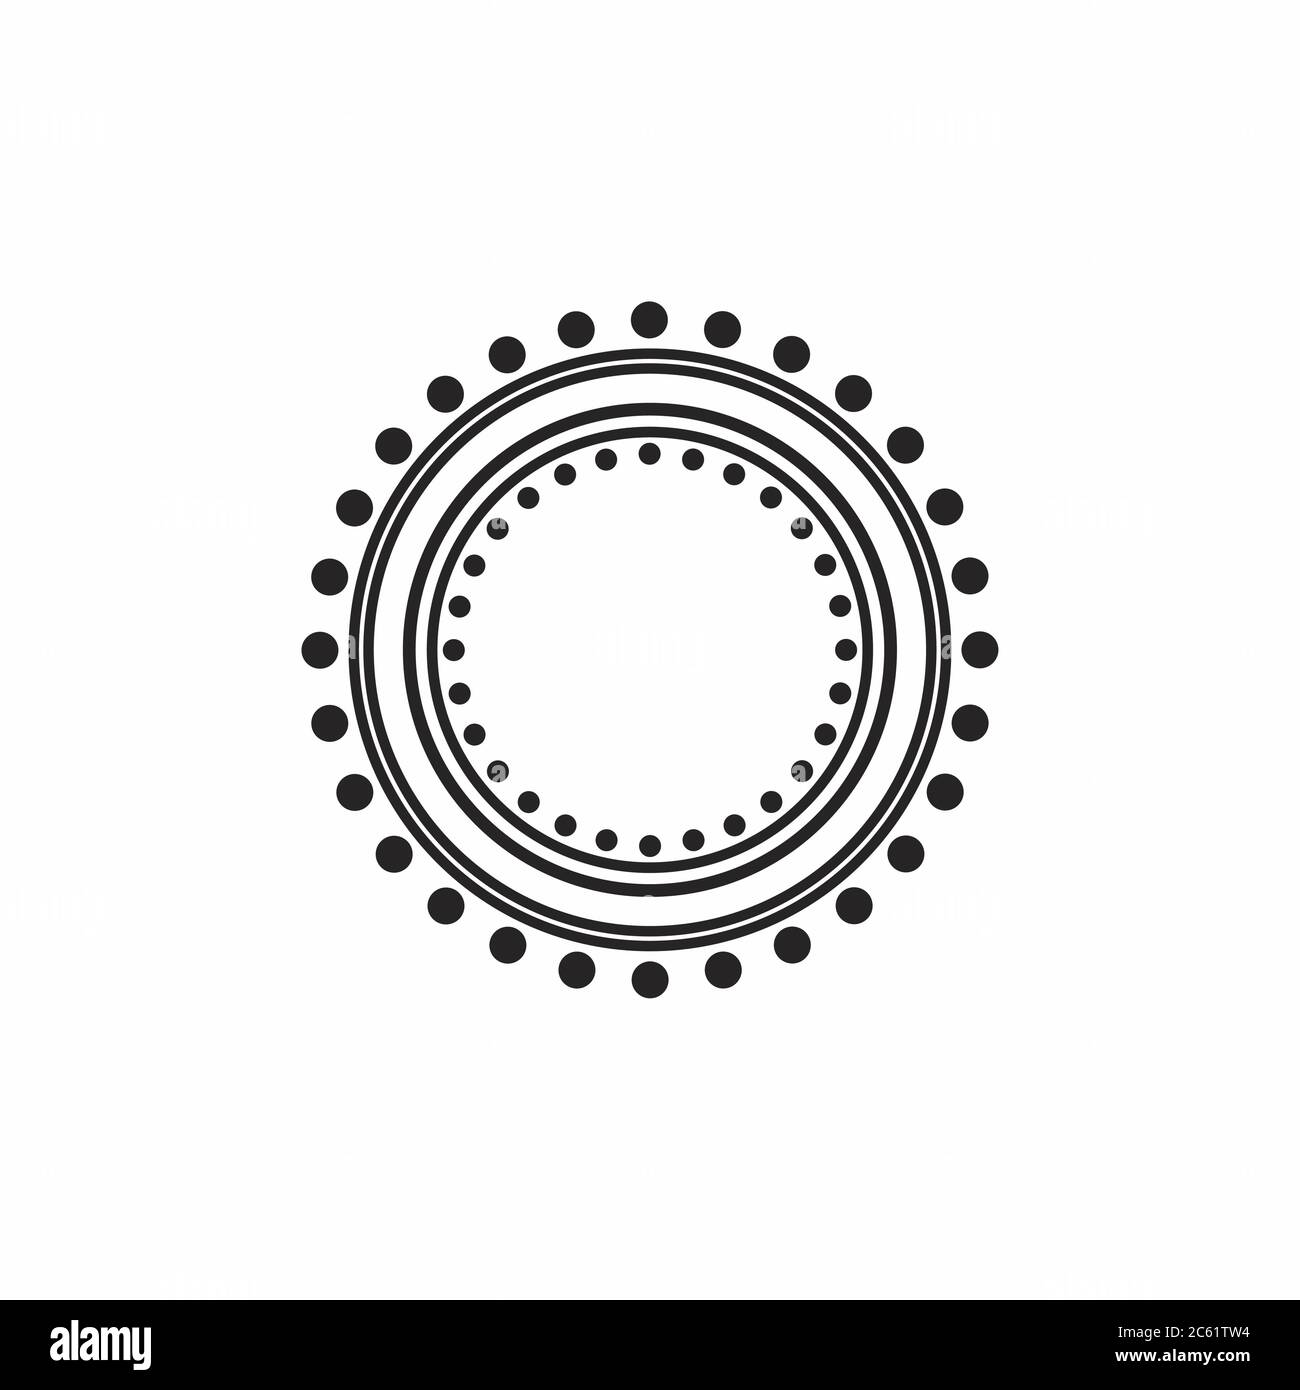 Blck vintage circle frame stock vector. Illustration of pattern